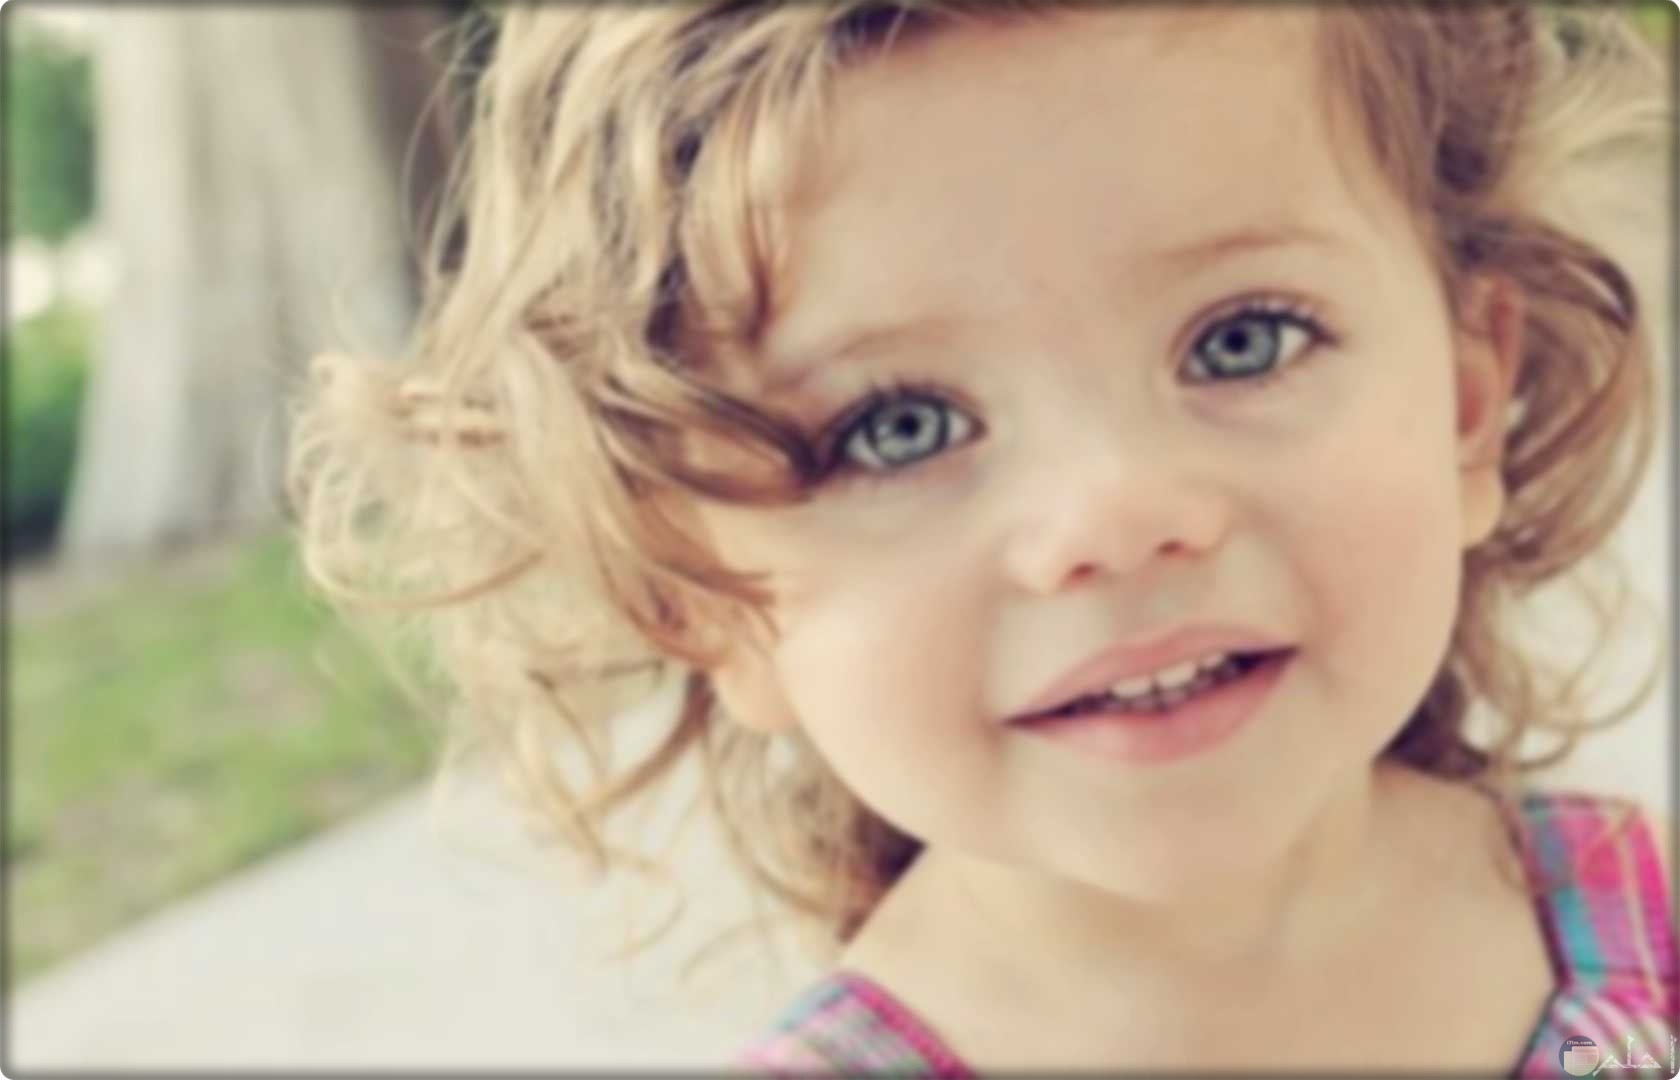 بنت صغيرة جميلة بشعر بنى مصفر و عين ملونة.